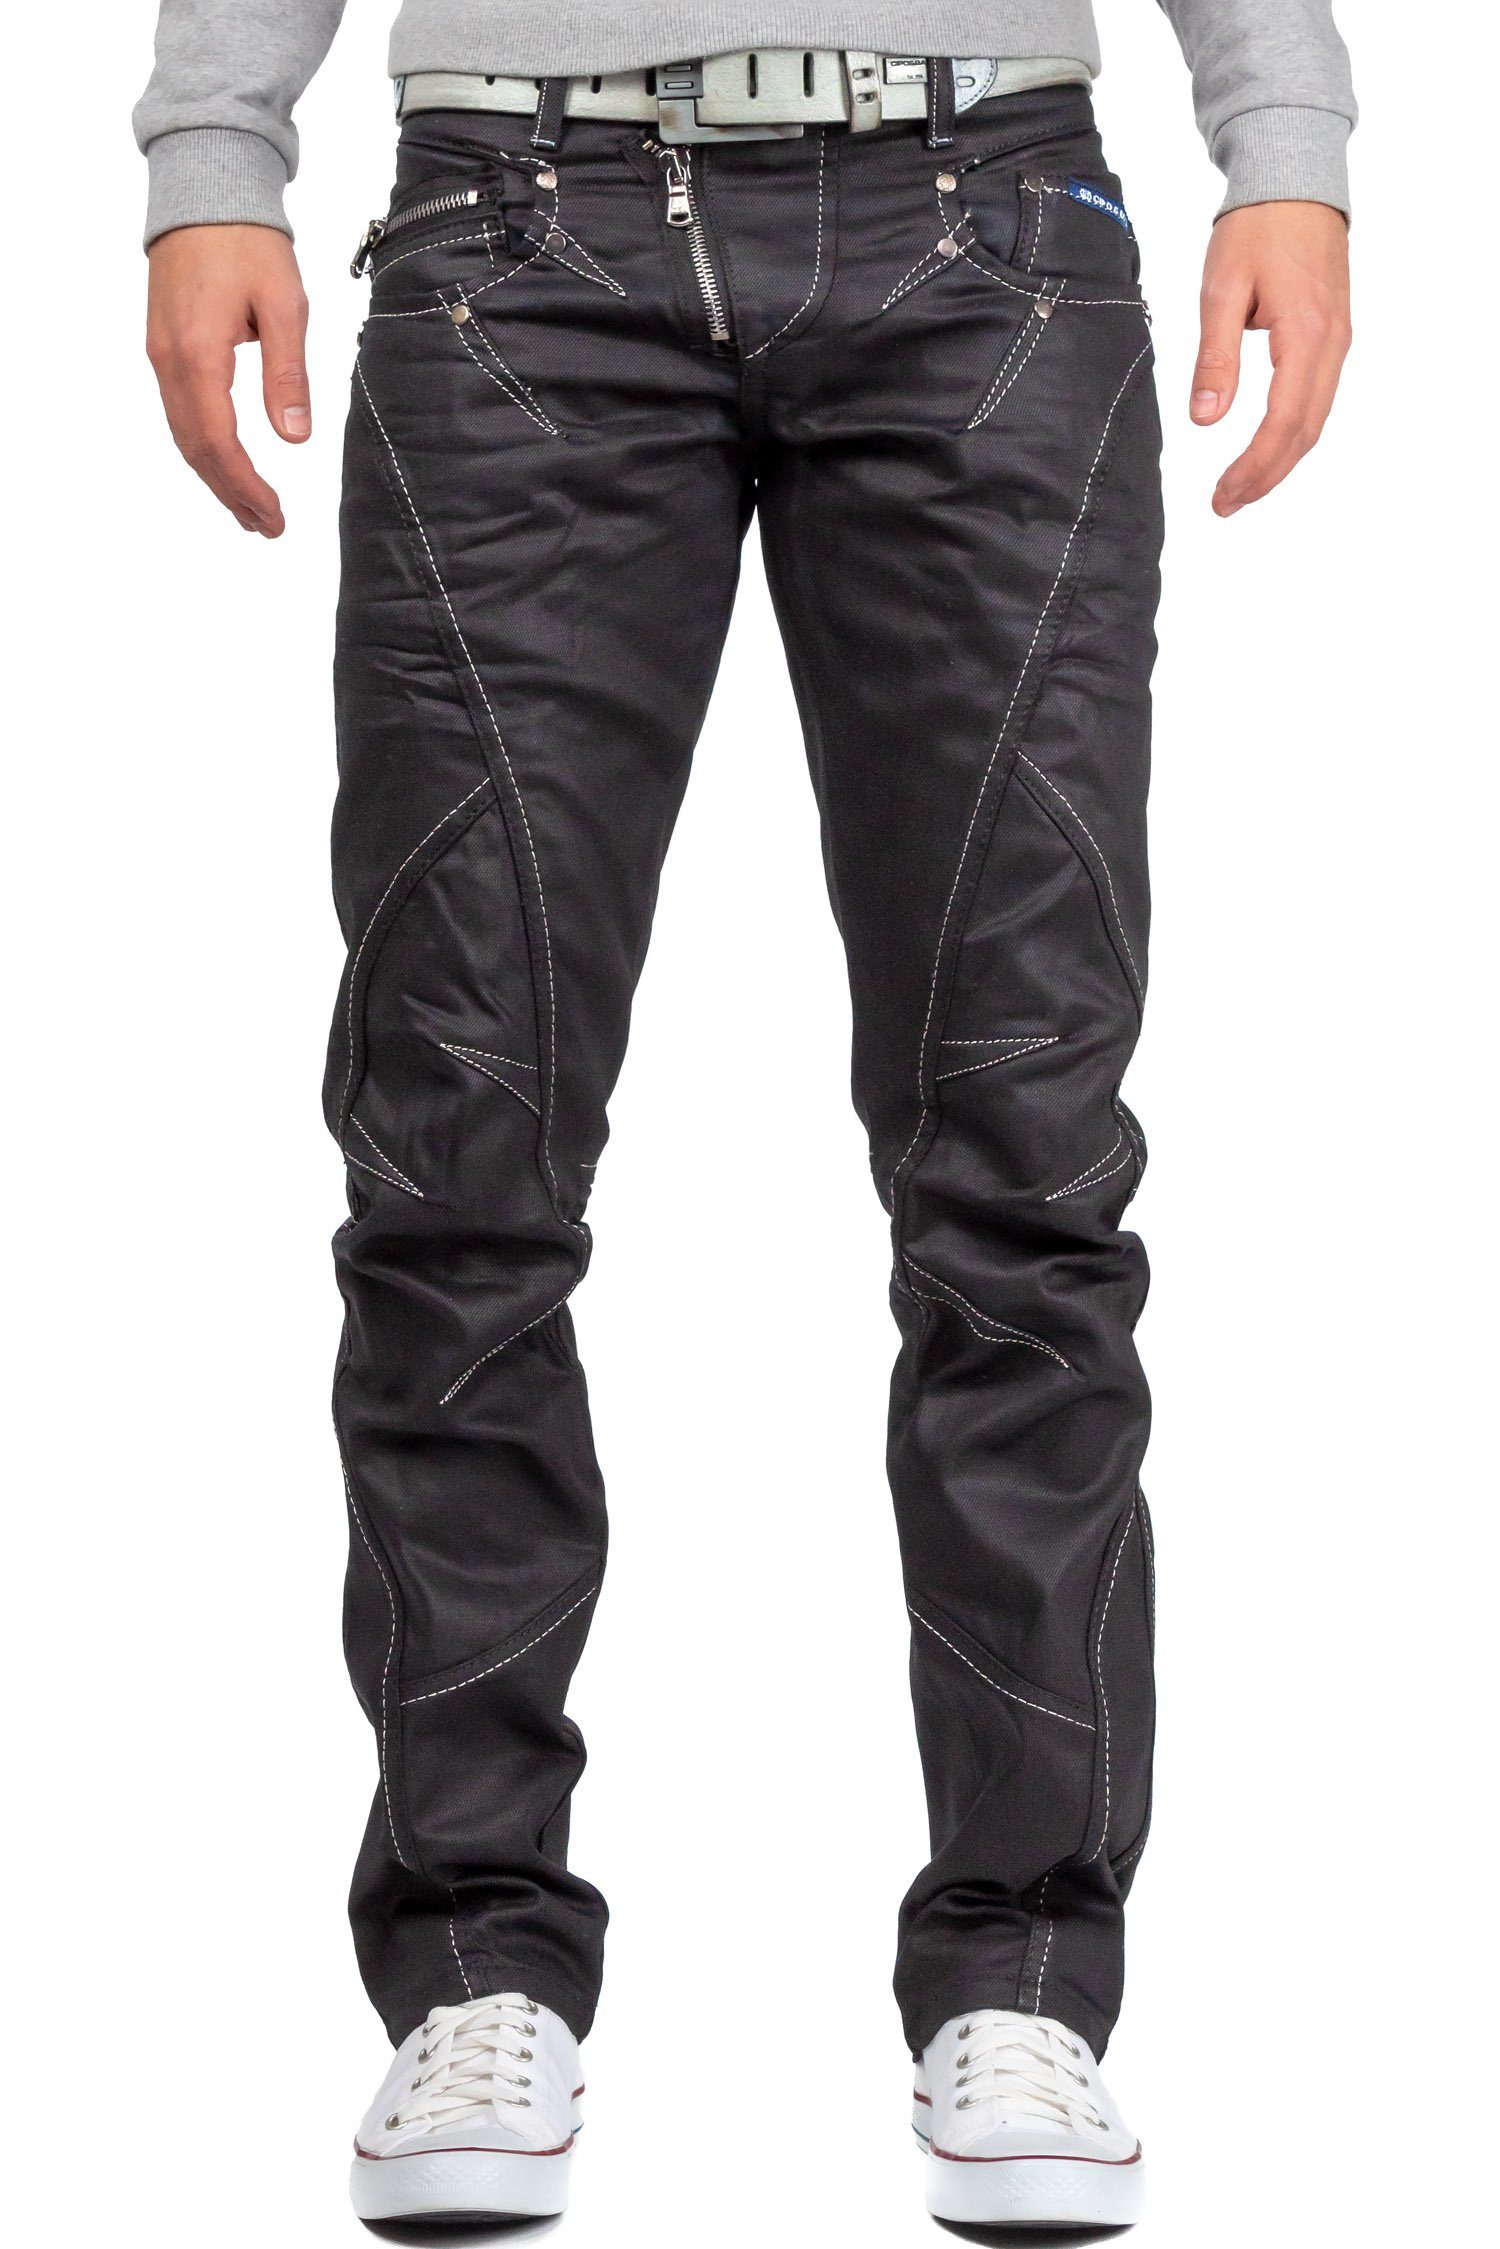 Cipo & Baxx 5-Pocket-Jeans Hose BA-C0812 in Schwarz Glänzend mit weißen  Nähten